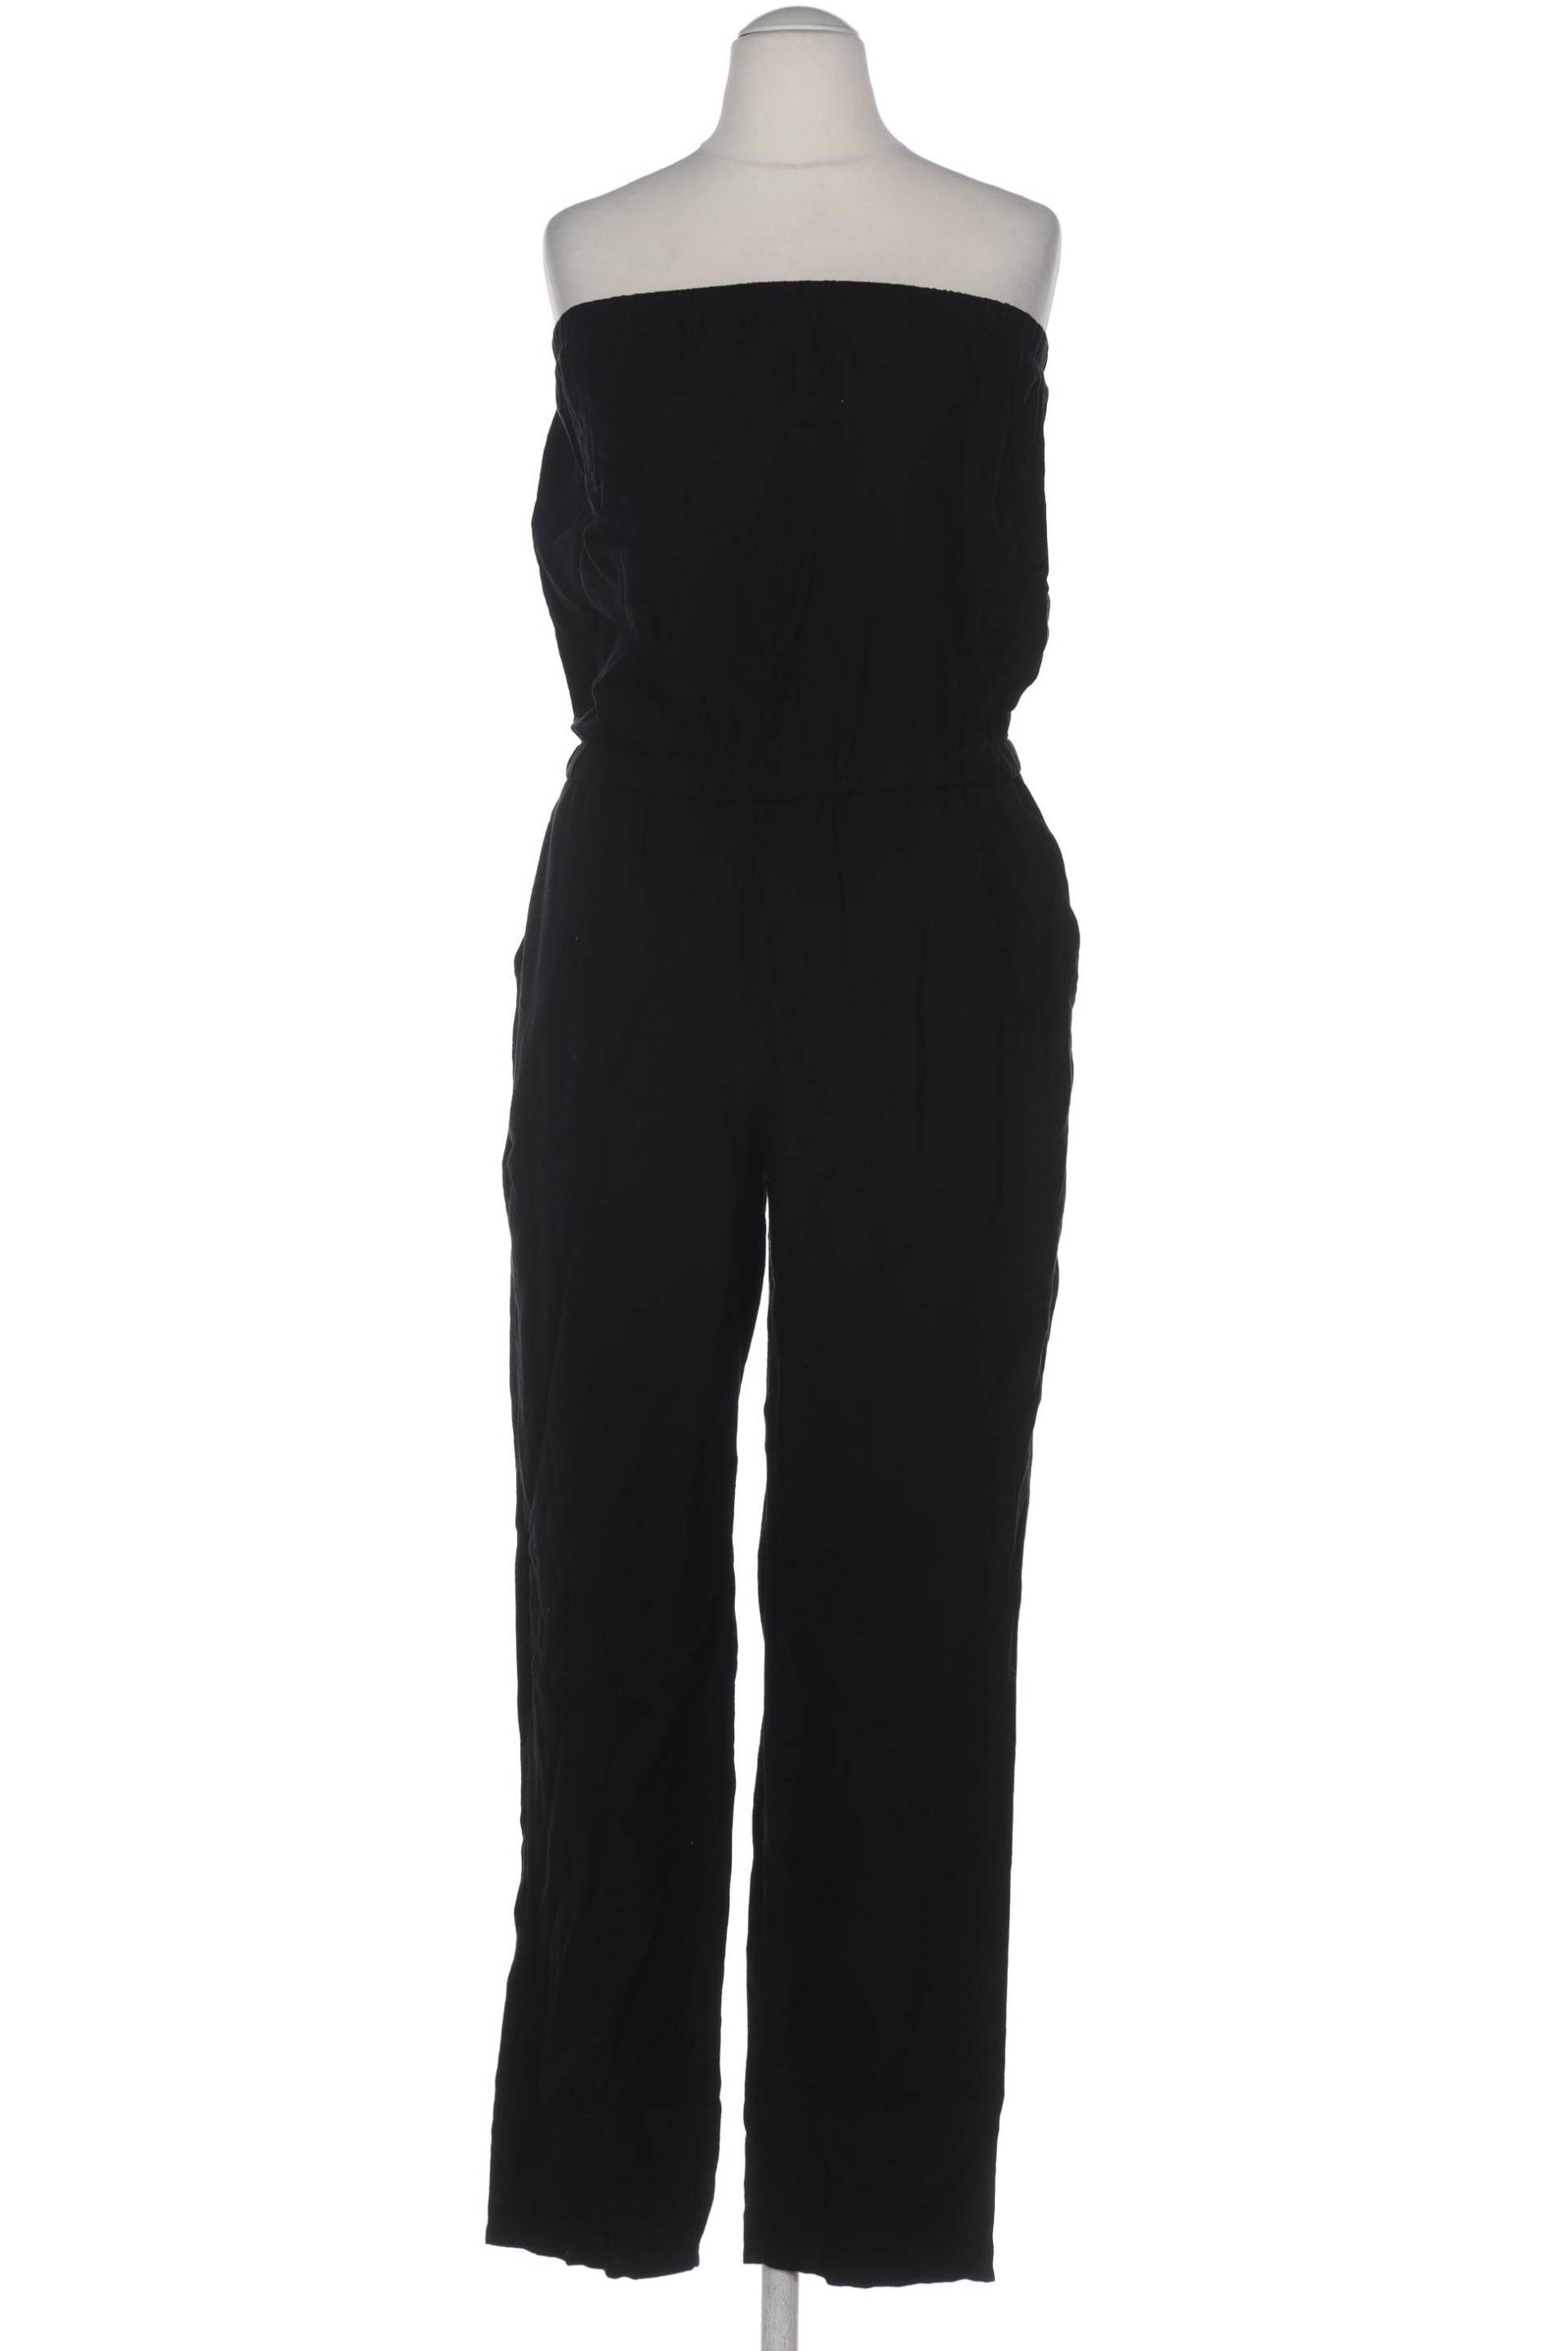 Hallhuber Damen Jumpsuit/Overall, schwarz, Gr. 38 von Hallhuber